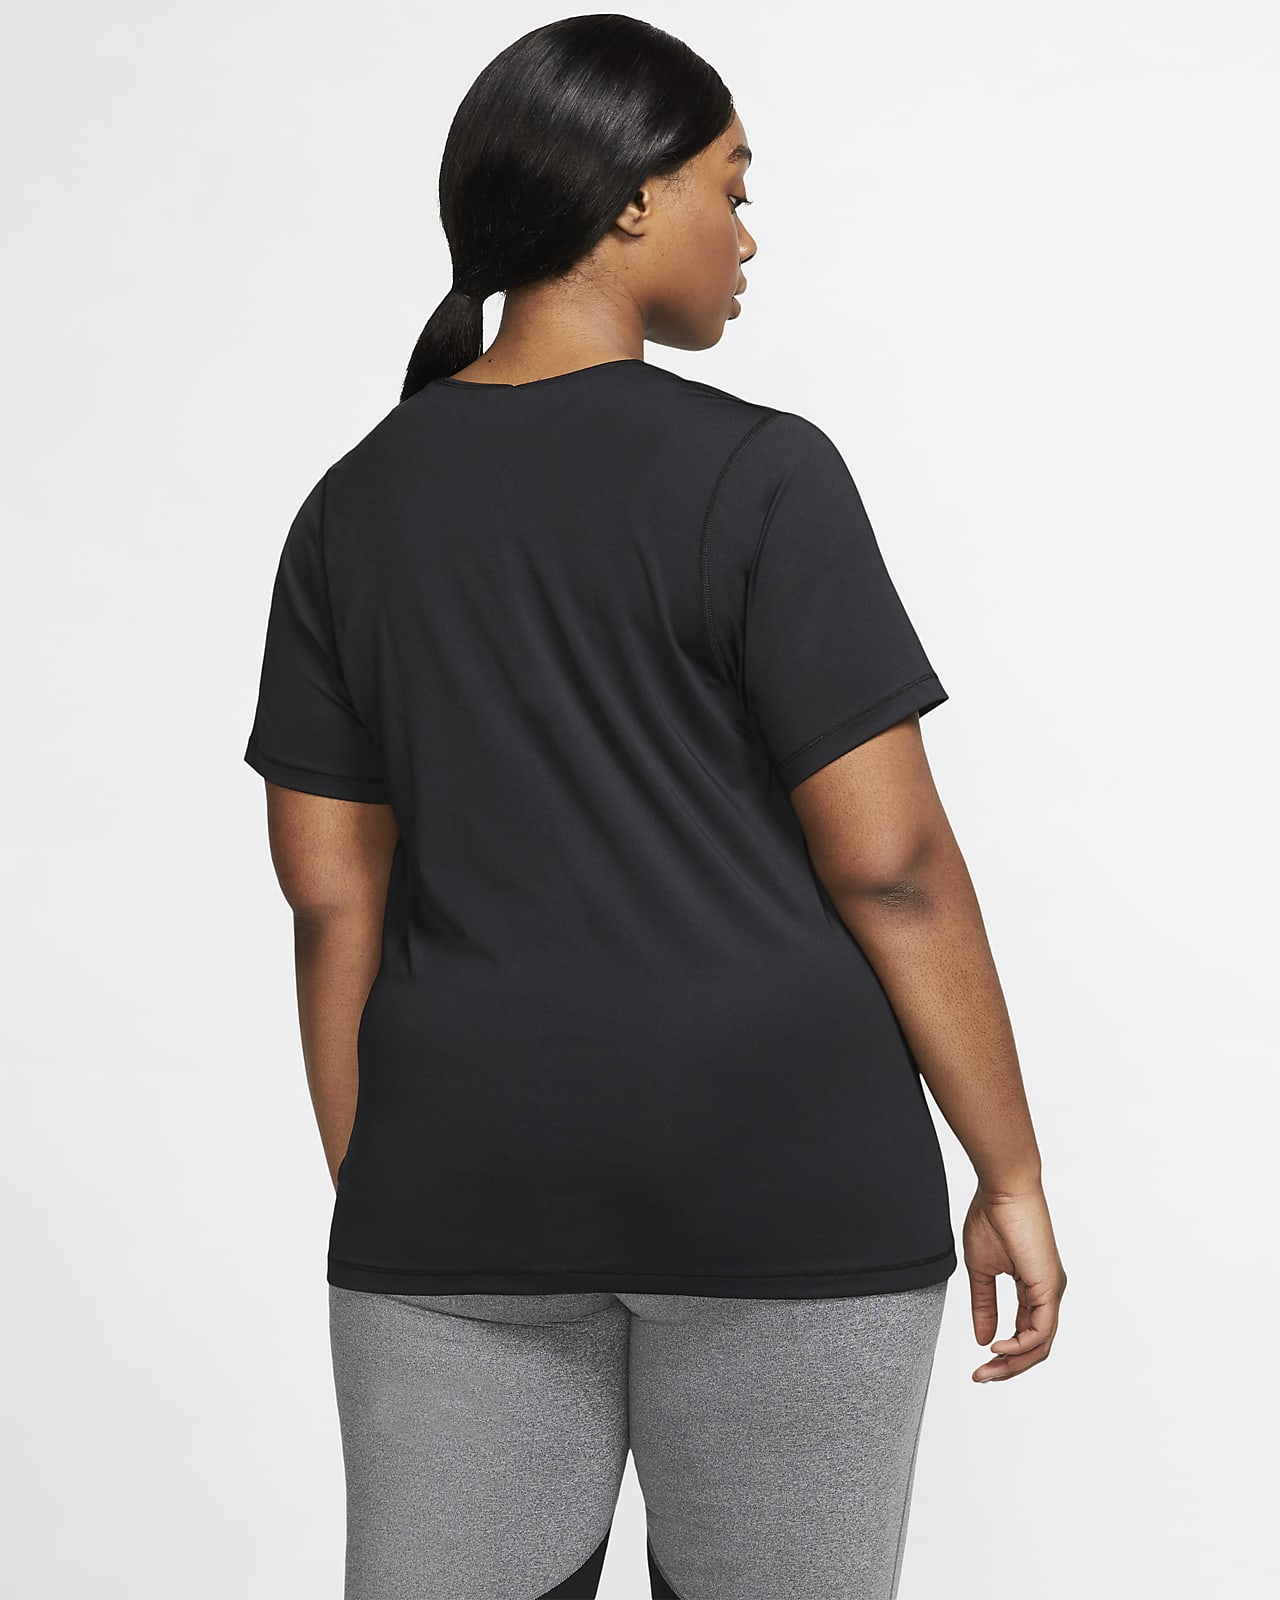 Nike Pro Women's Mesh Top (Plus Size). Nike SA